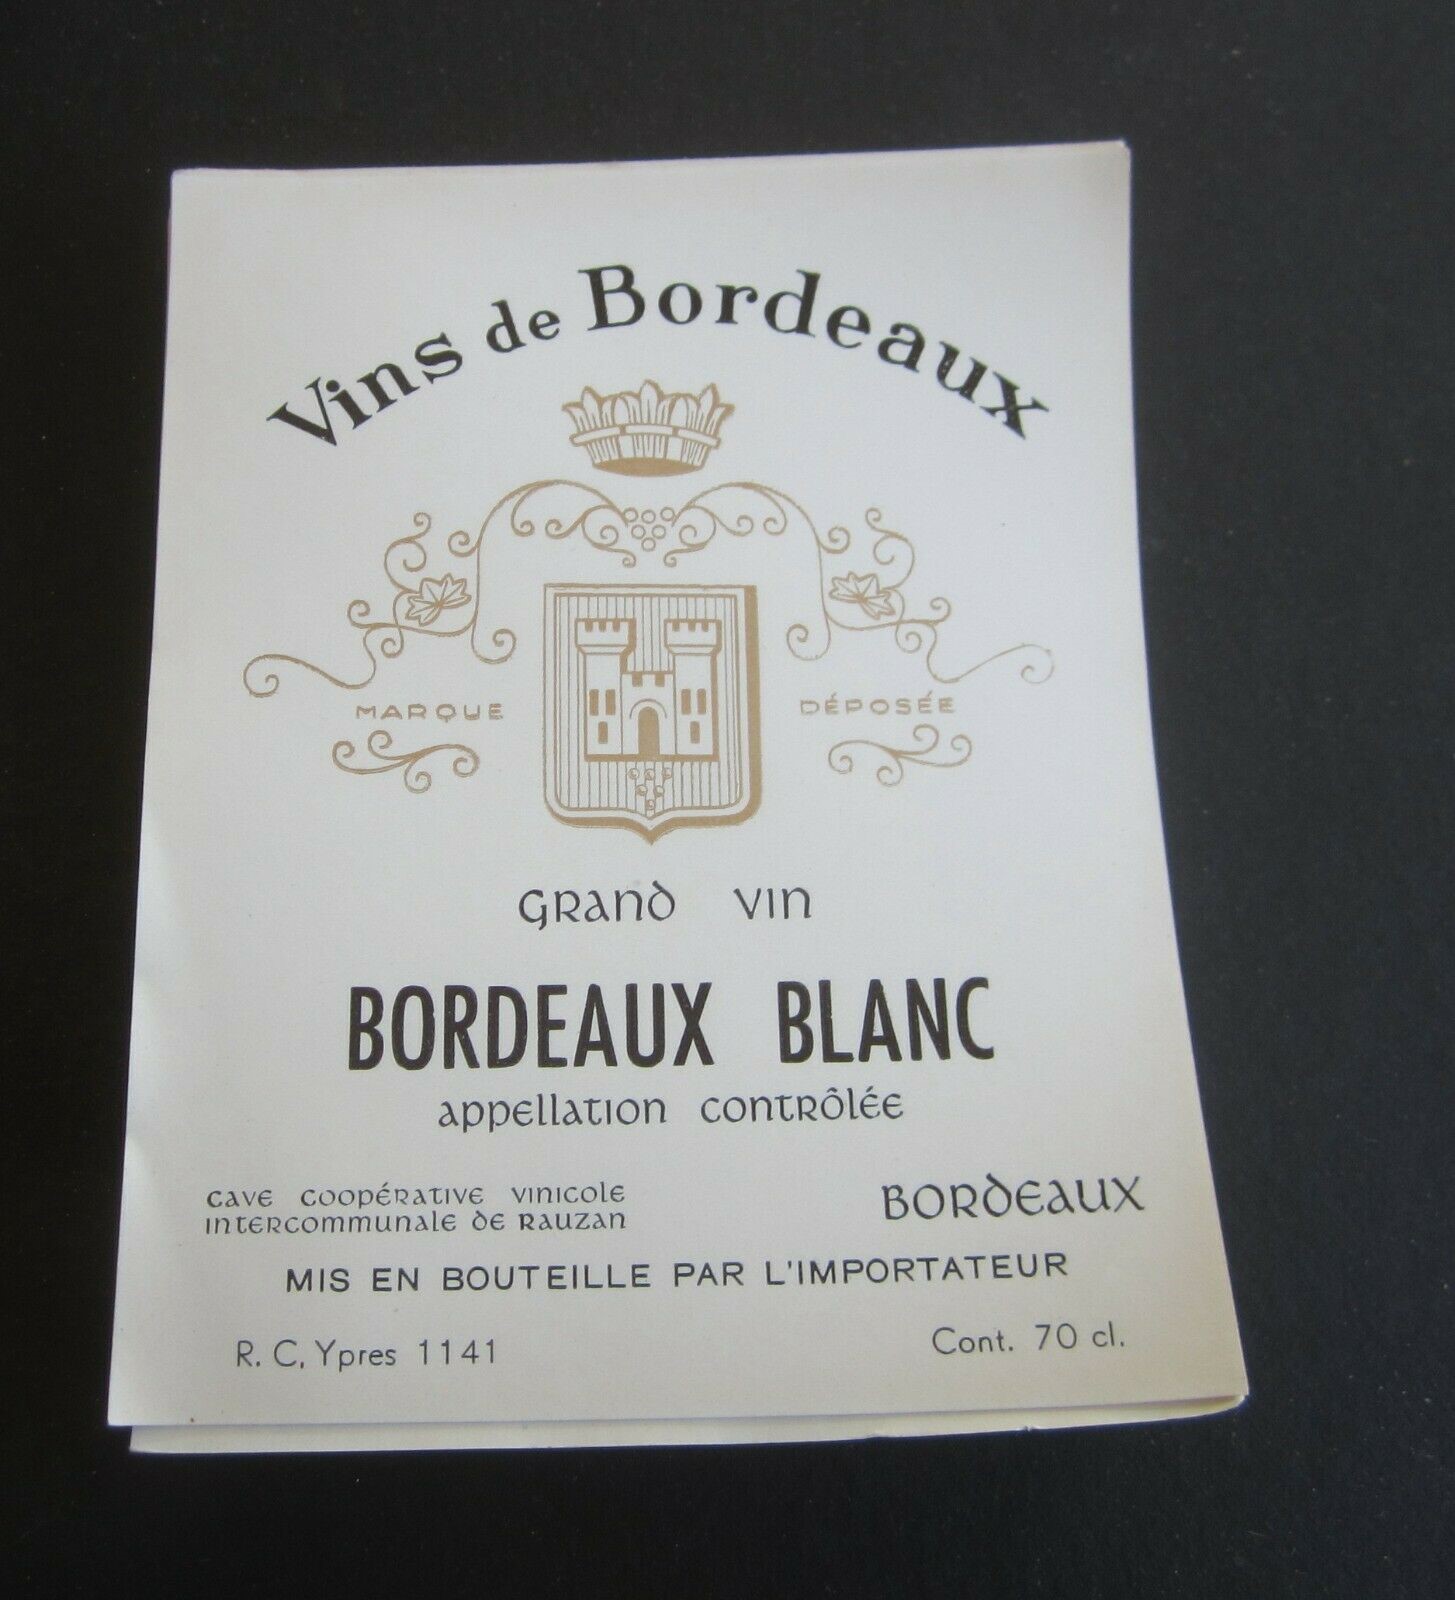  Lot of 100 Old Vintage - BORDEAUX BLANC - Fren...